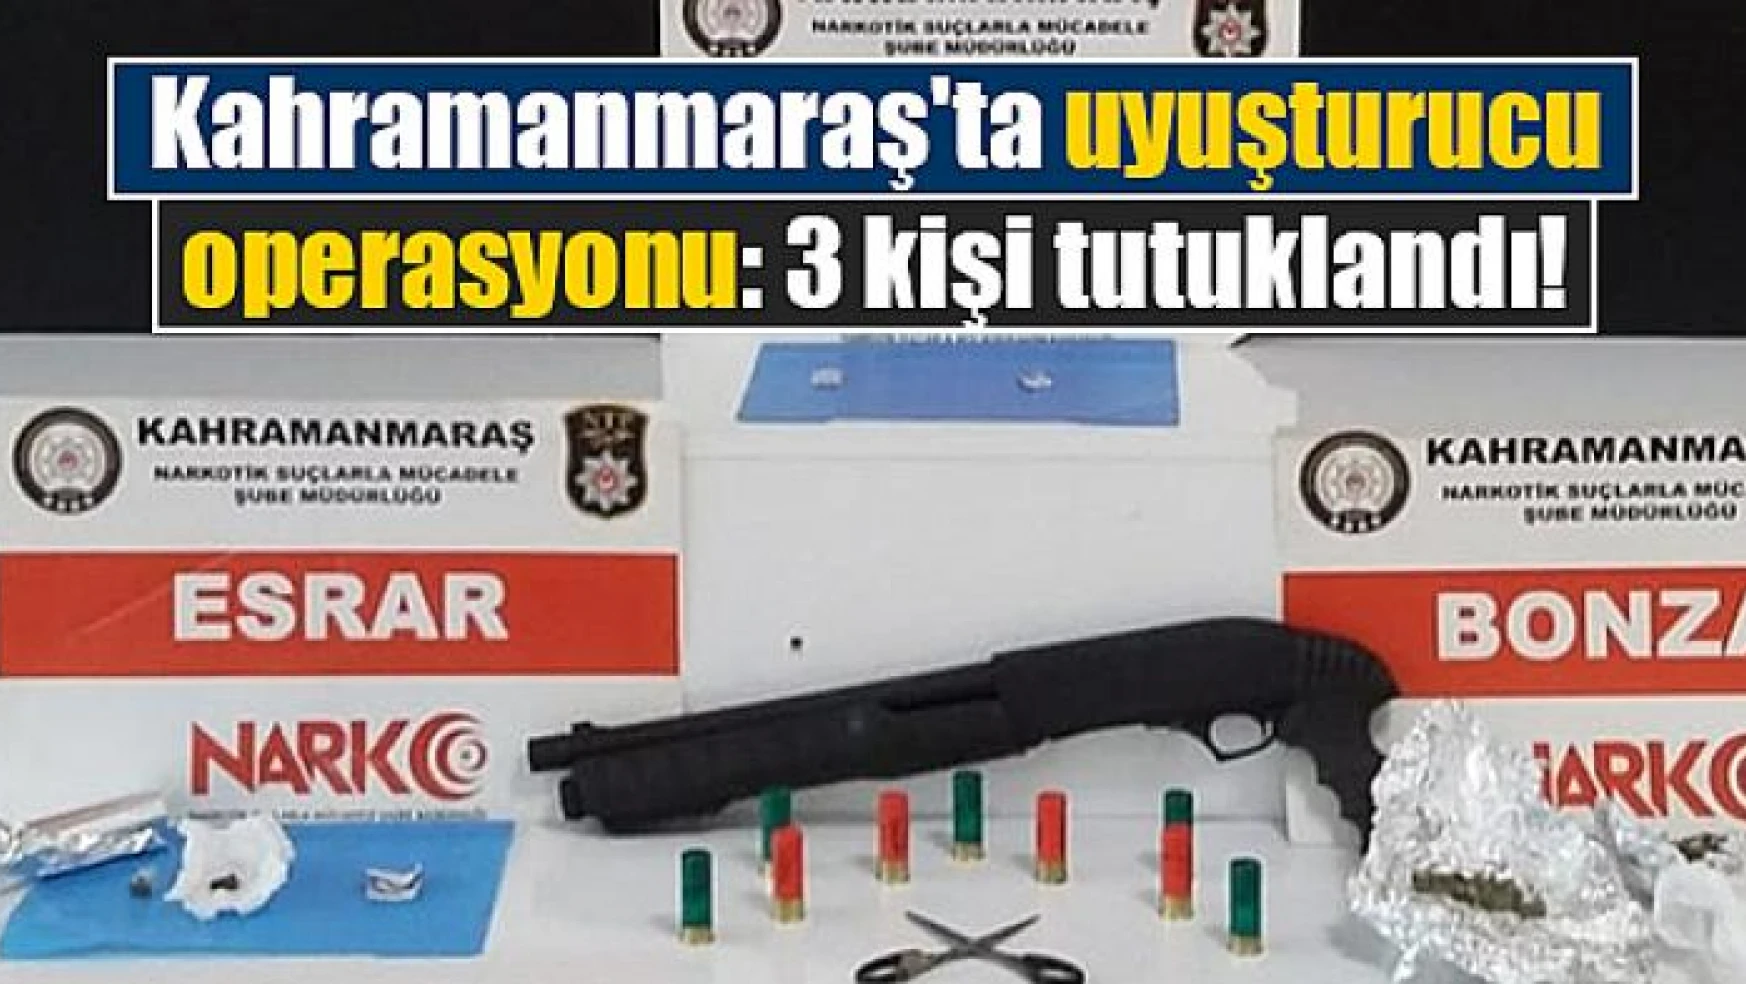 Kahramanmaraş'ta uyuşturucu operasyonu: 3 kişi tutuklandı!